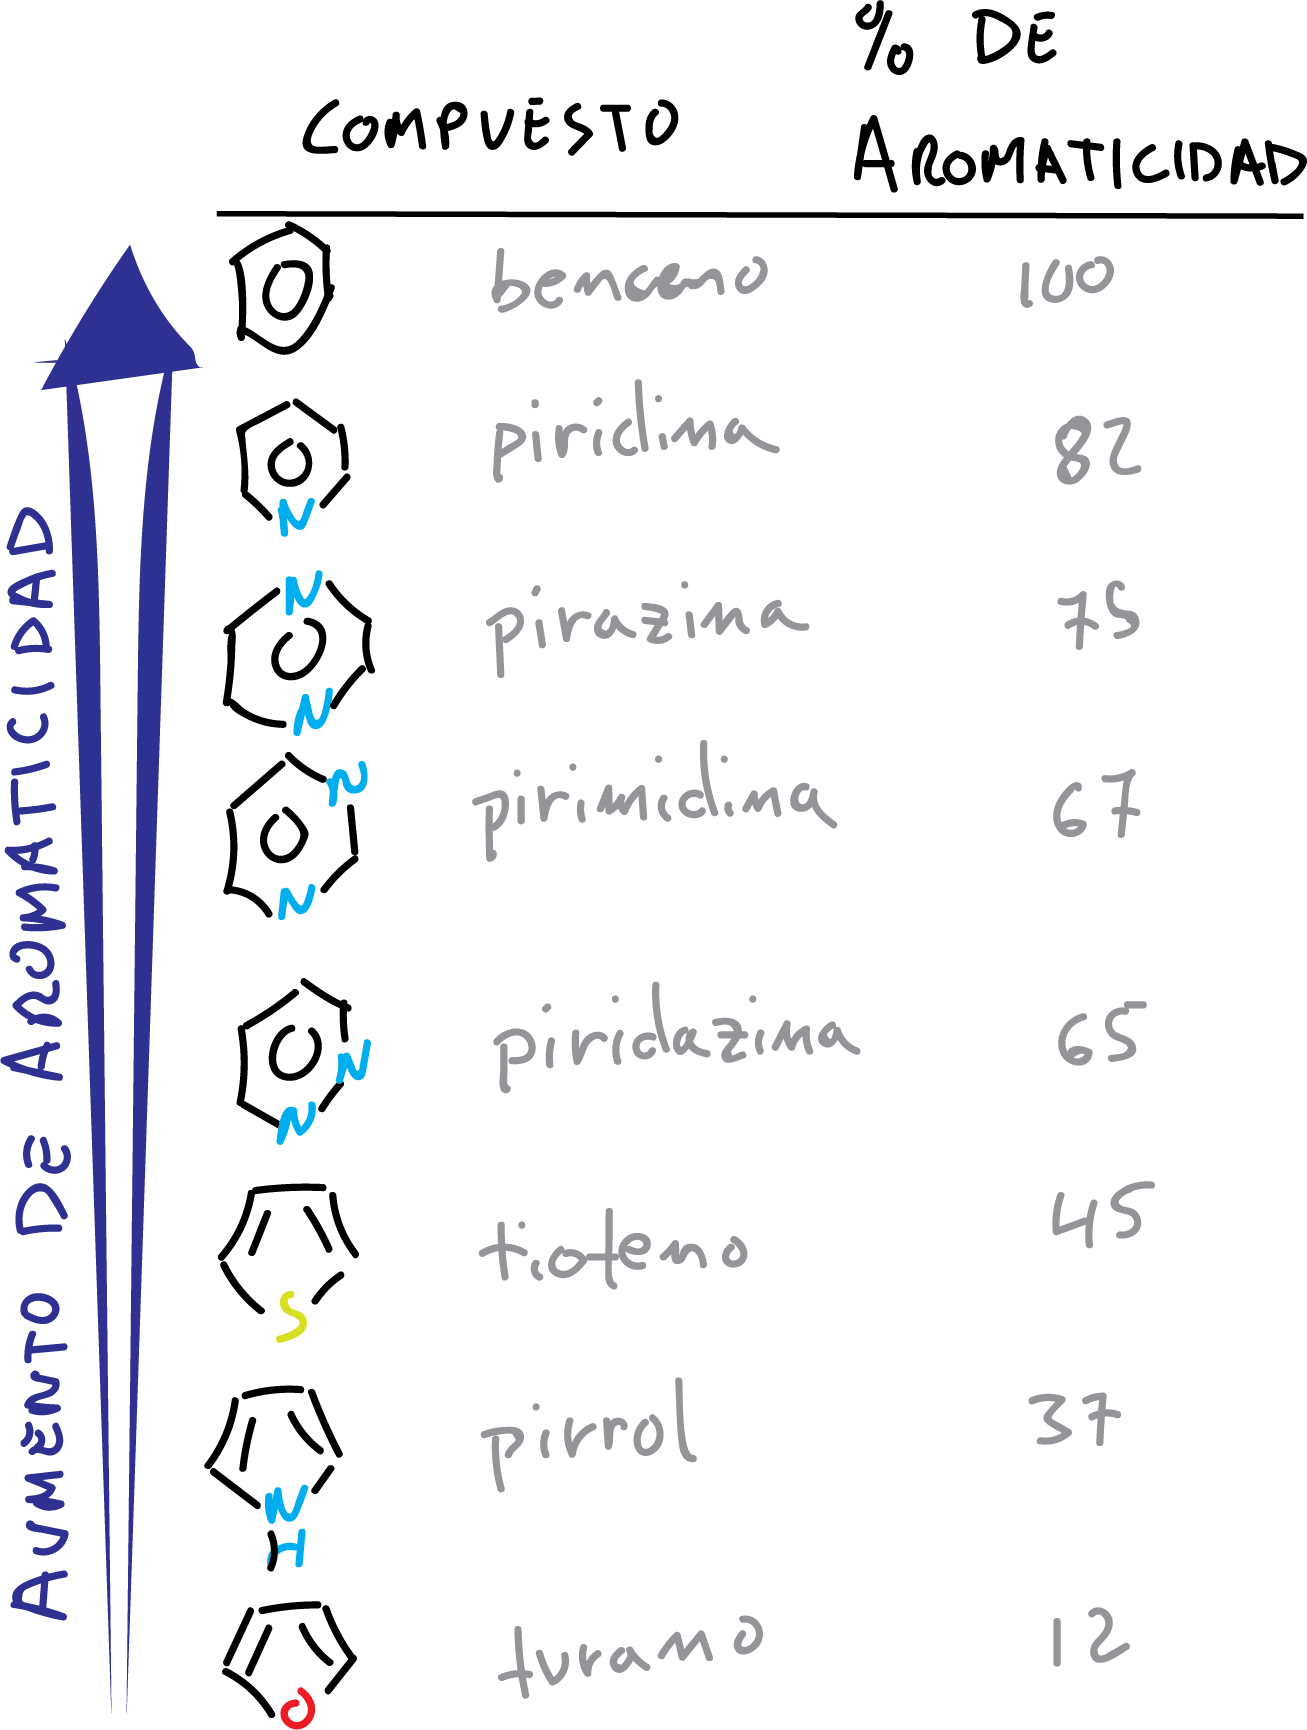 porcentaje de aromaticidad % compuestos heterociclicos benceno 4n+2 = 6 electrones pi, Hückel